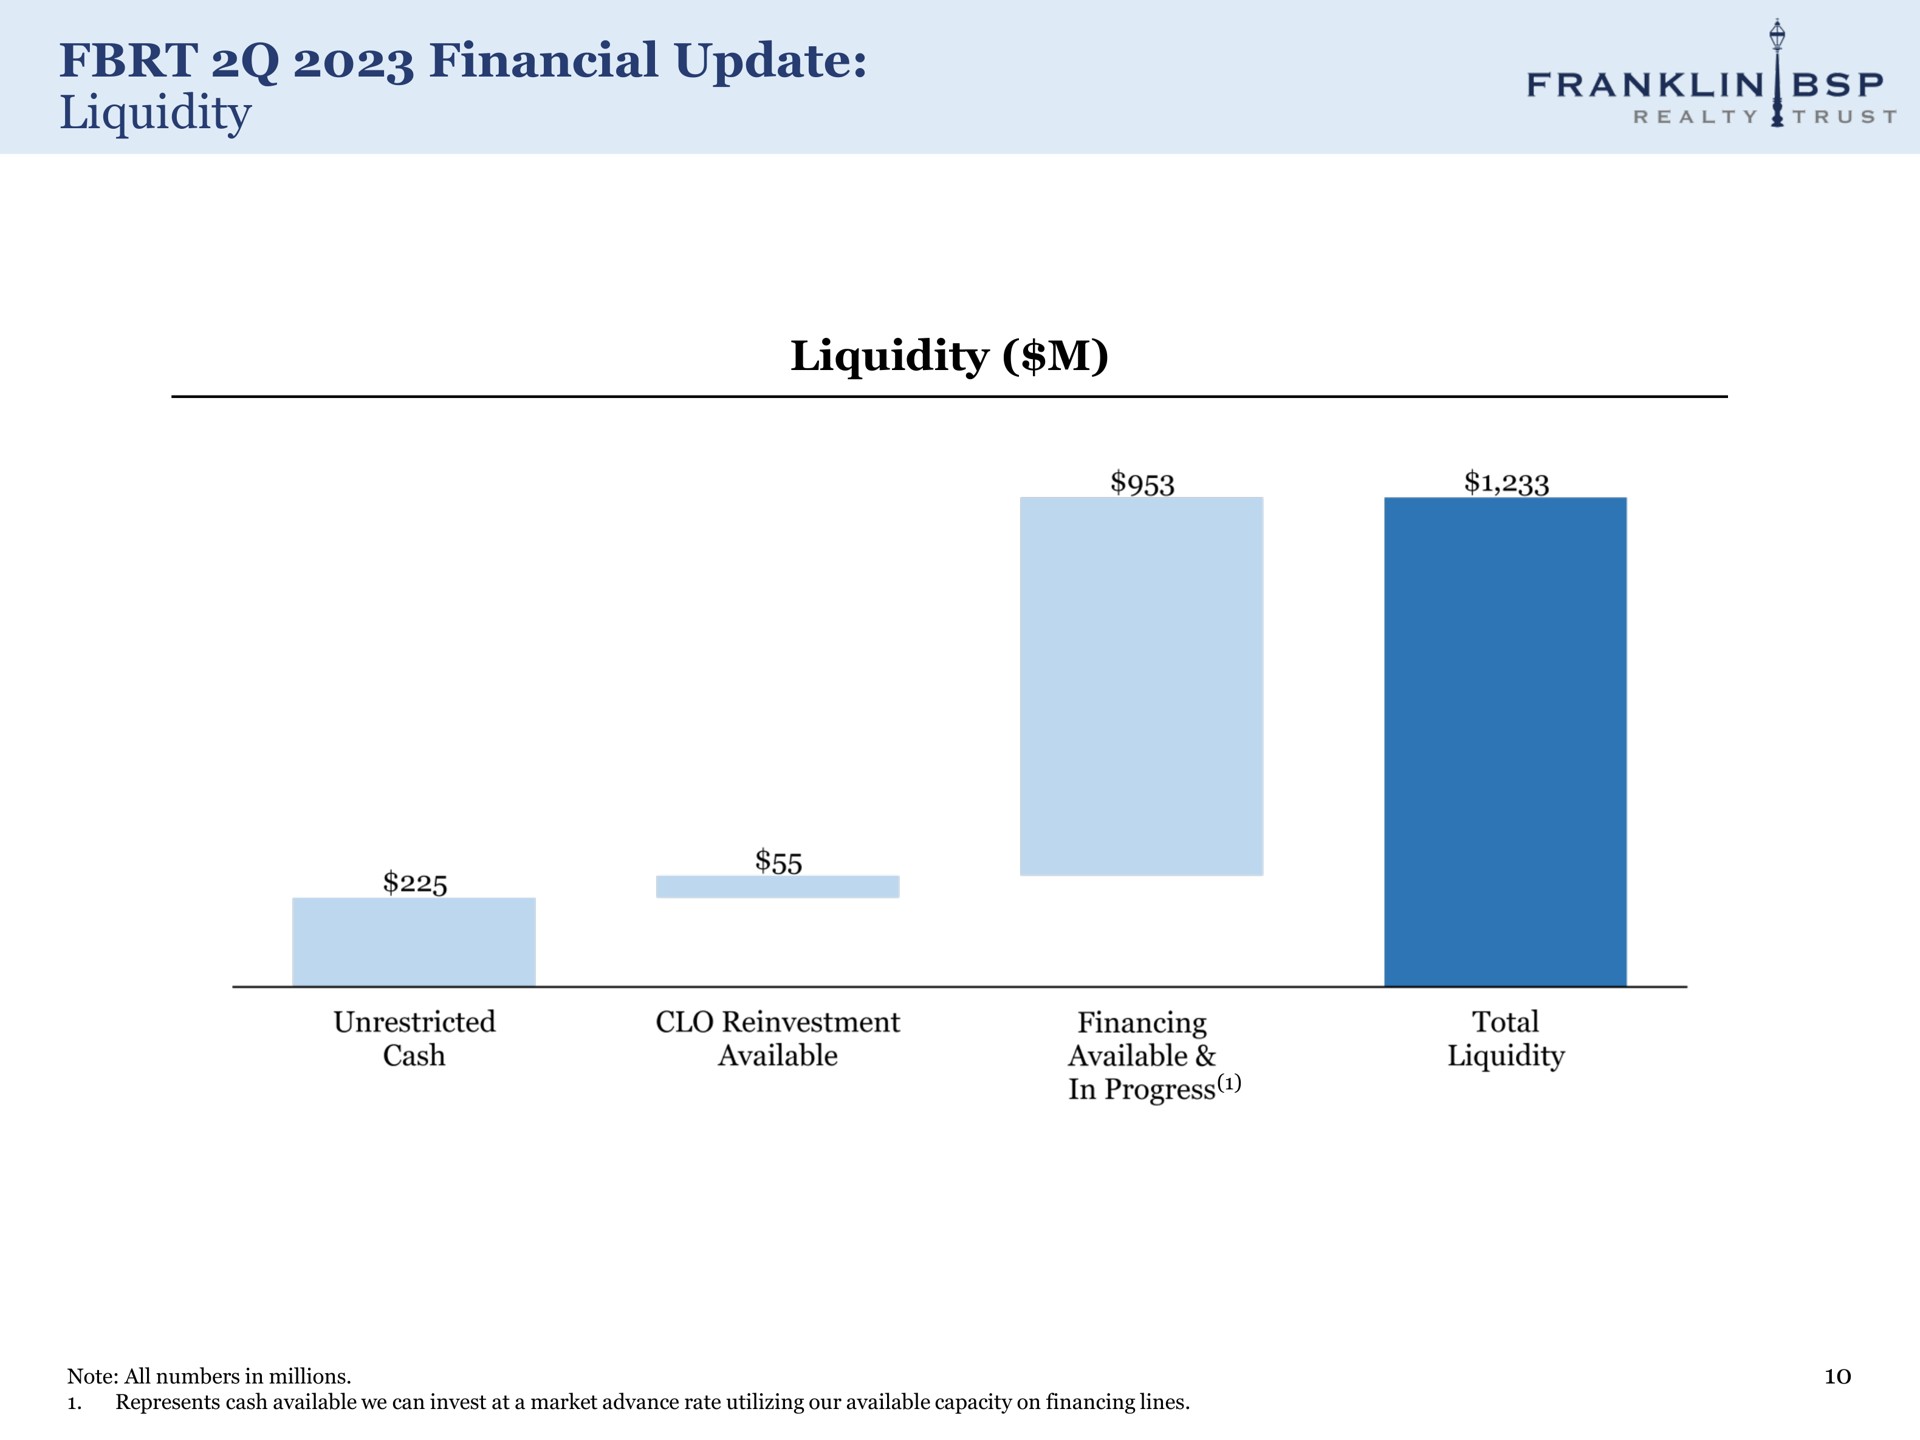 financial update liquidity liquidity | Franklin BSP Realty Trust